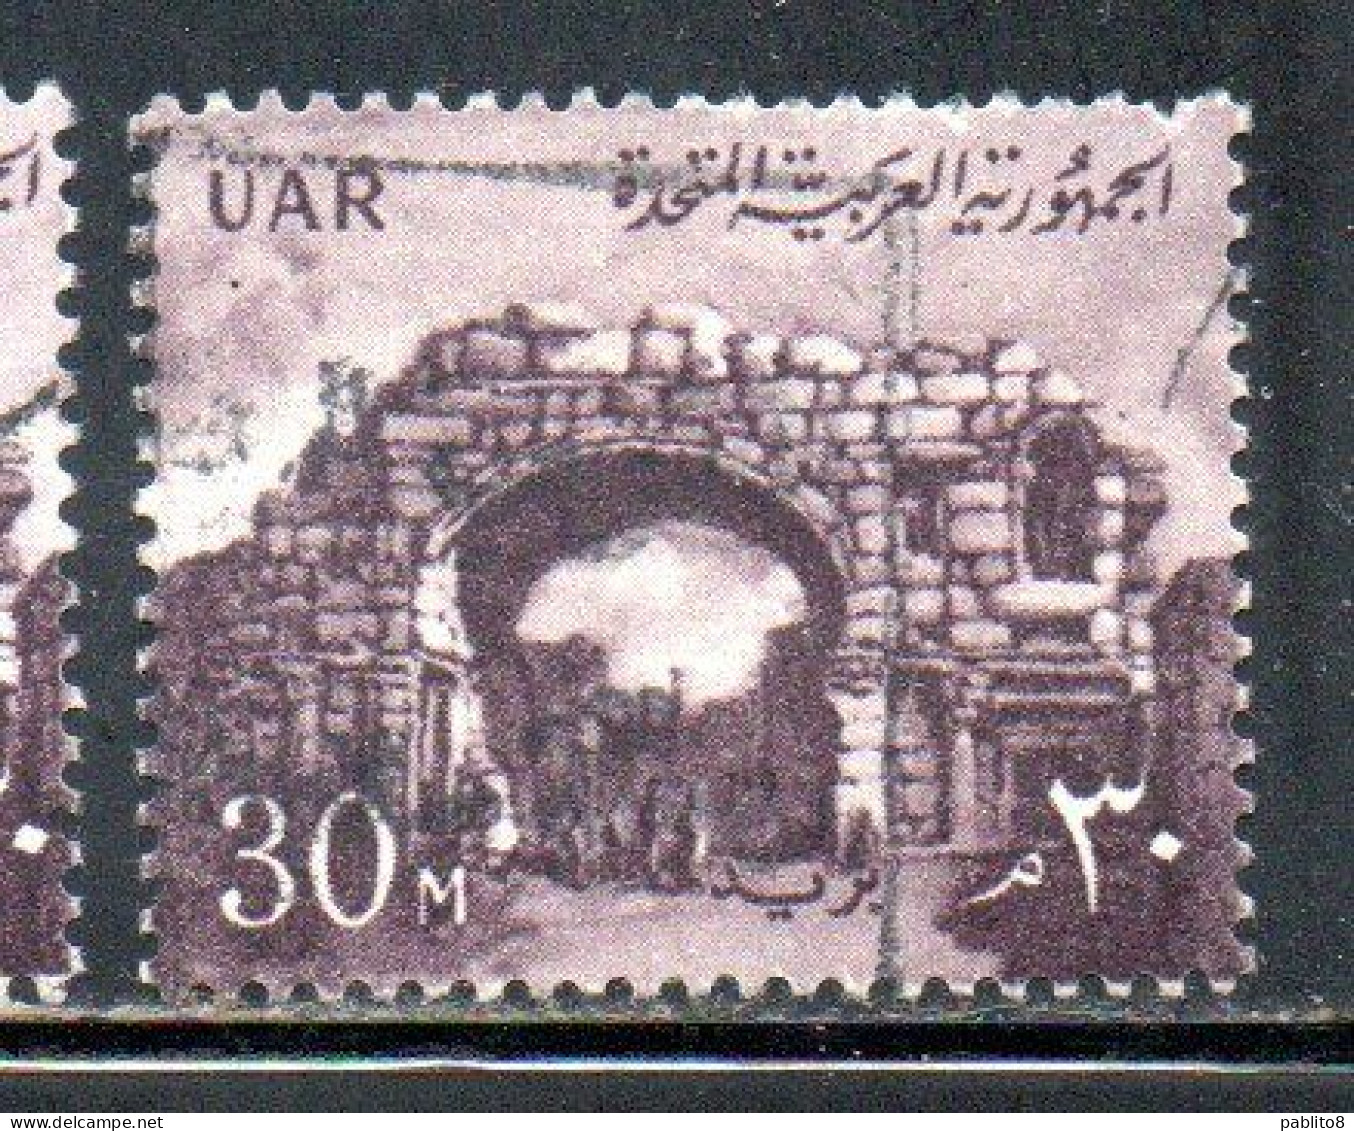 UAR EGYPT EGITTO 1959 1960 ST. SIMON'S GATE BOSRA SYRIA  30m USED USATO OBLITERE' - Usados